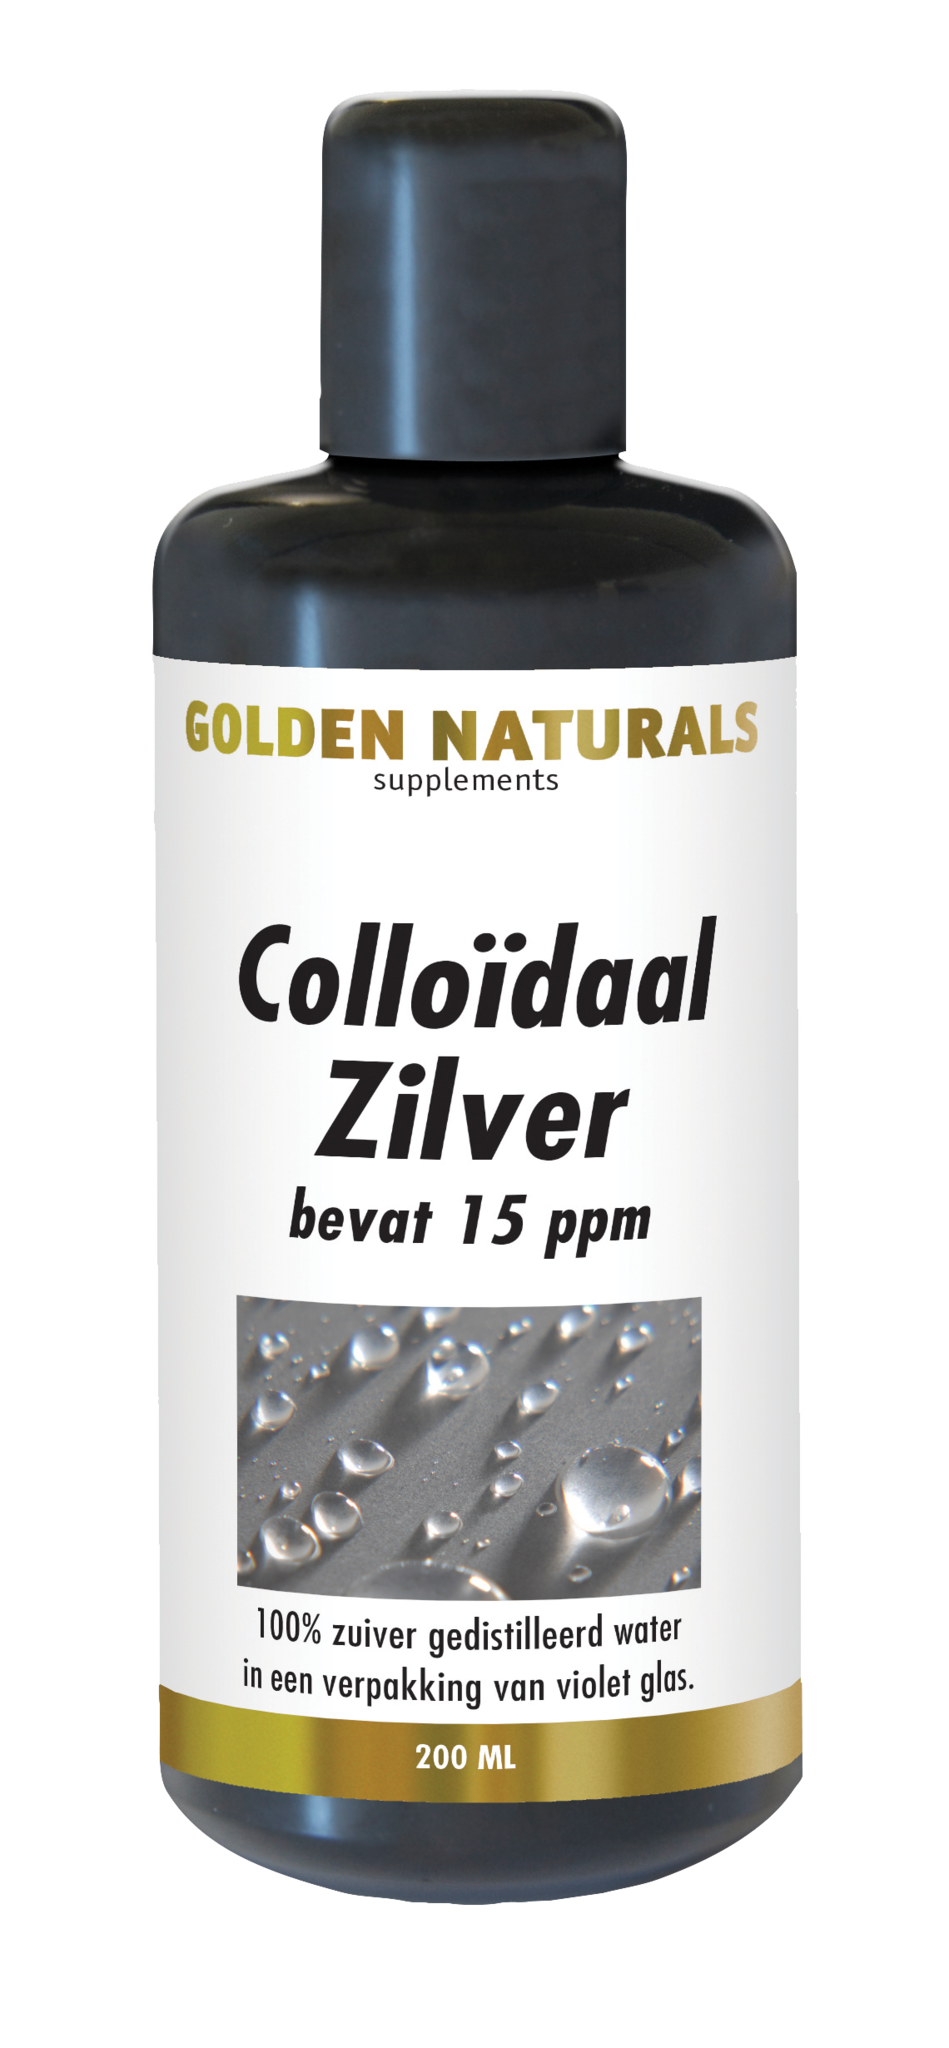 Golden Naturals Golden Naturals Colloïdaal Zilver